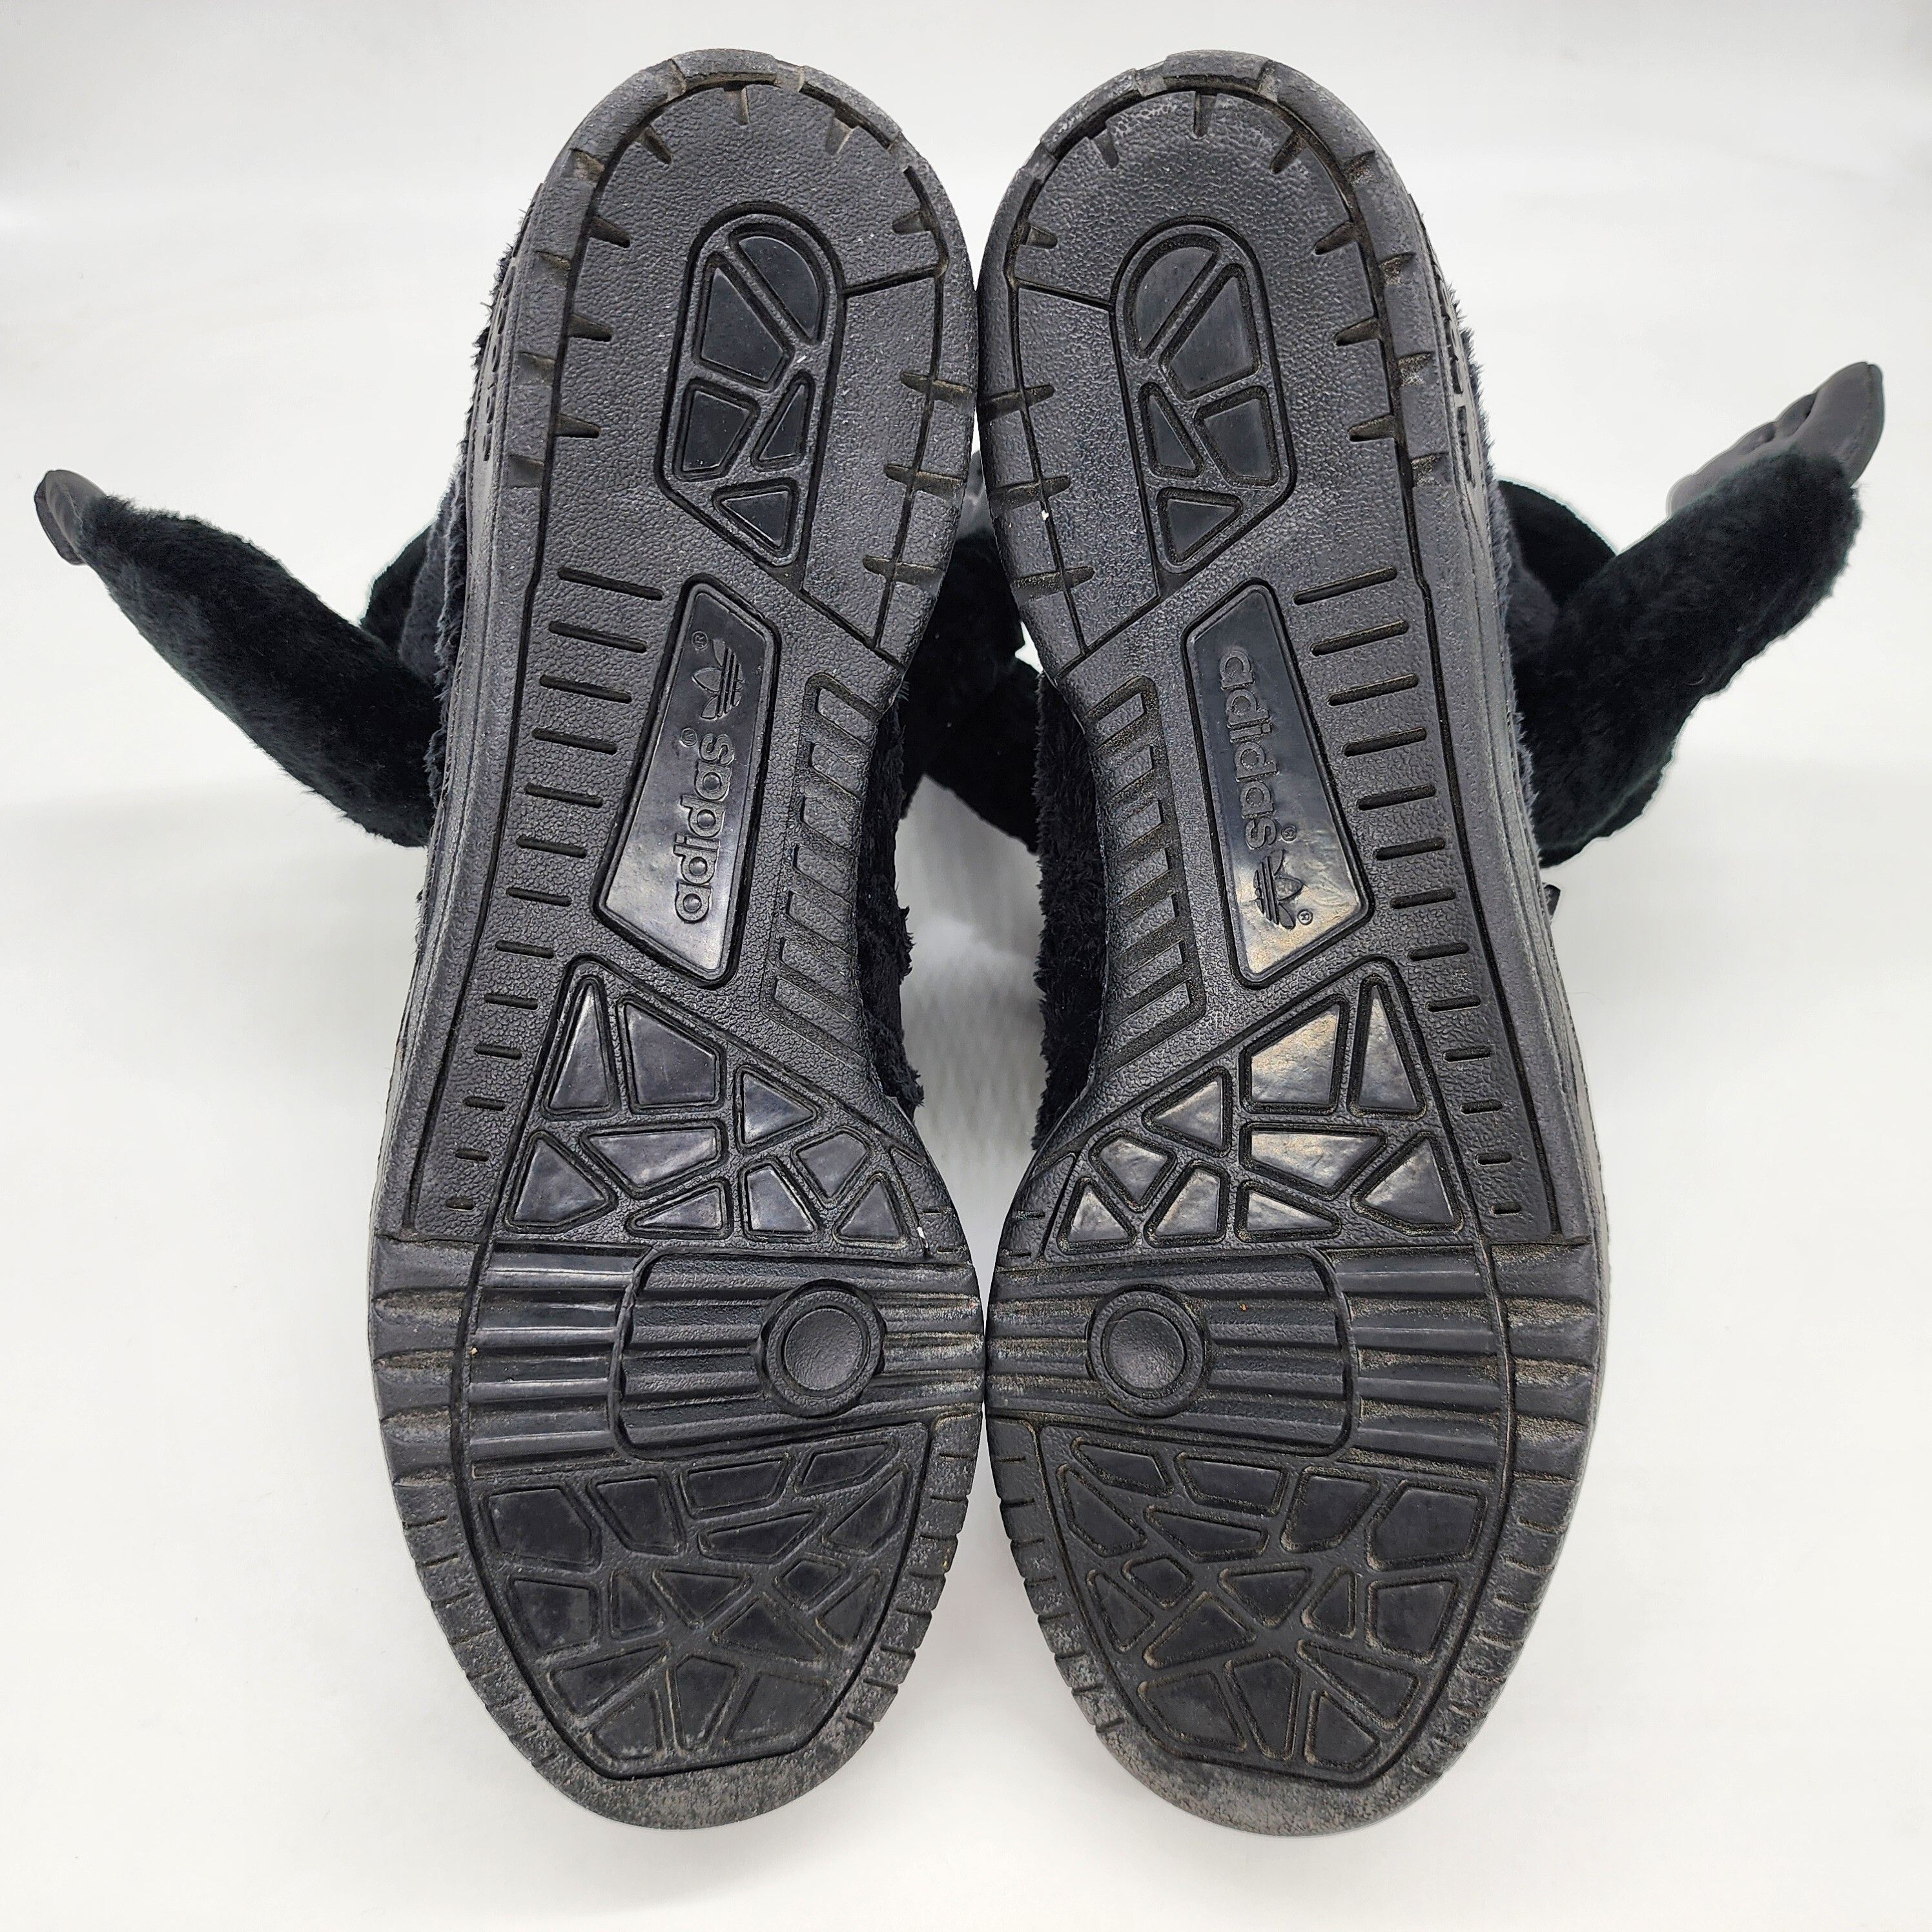 Adidas x Jeremy Scott - Gorilla Sneakers "2 Chainz" - 9